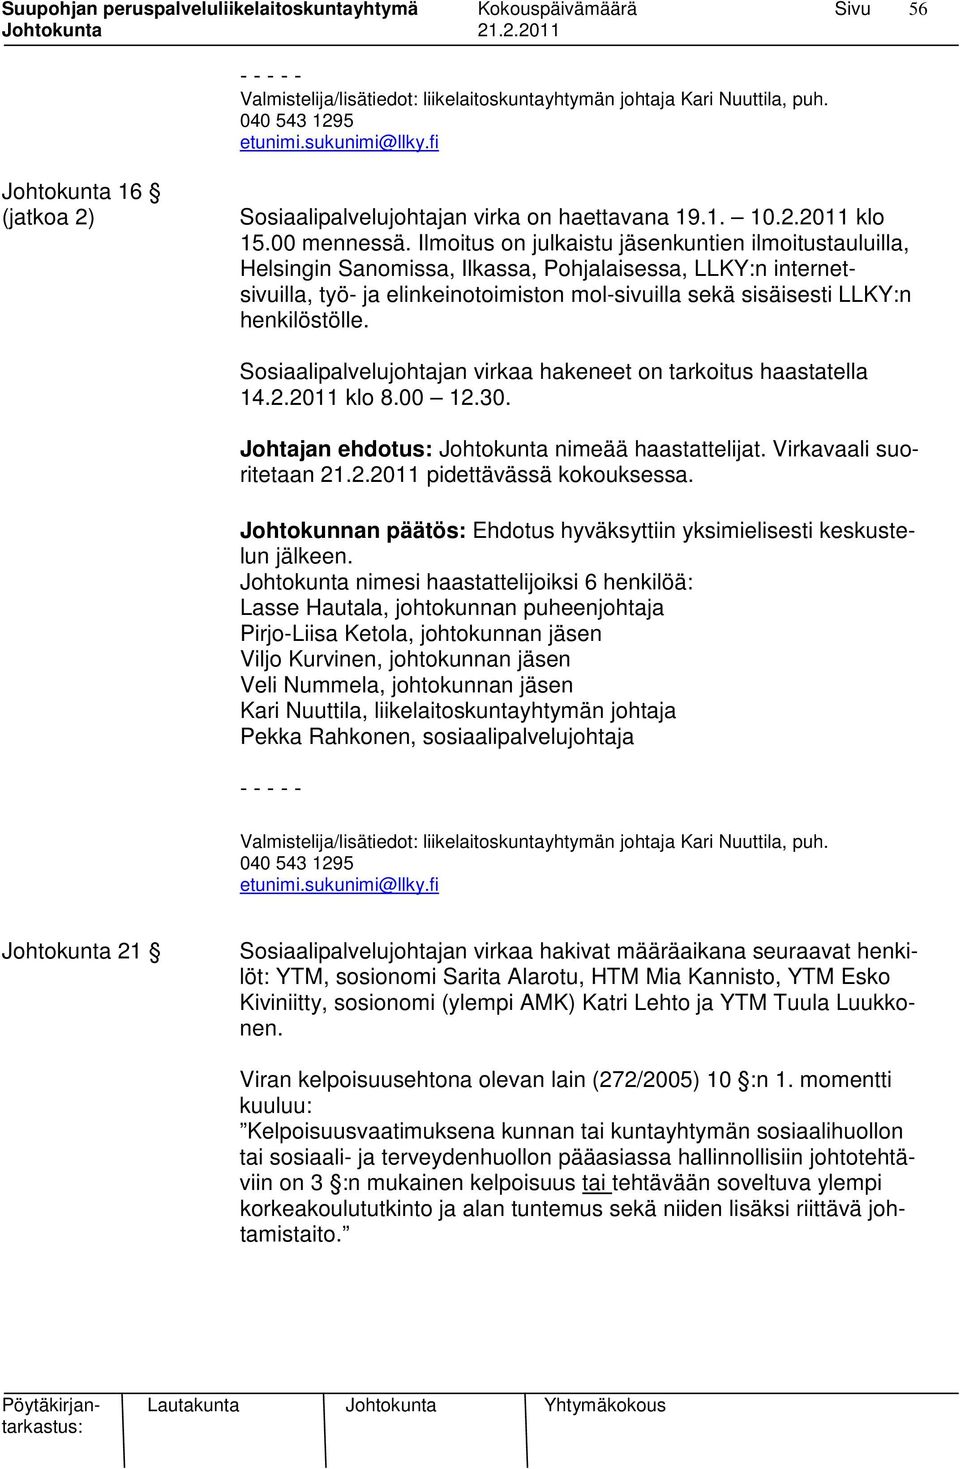 Ilmoitus on julkaistu jäsenkuntien ilmoitustauluilla, Helsingin Sanomissa, Ilkassa, Pohjalaisessa, LLKY:n internetsivuilla, työ- ja elinkeinotoimiston mol-sivuilla sekä sisäisesti LLKY:n